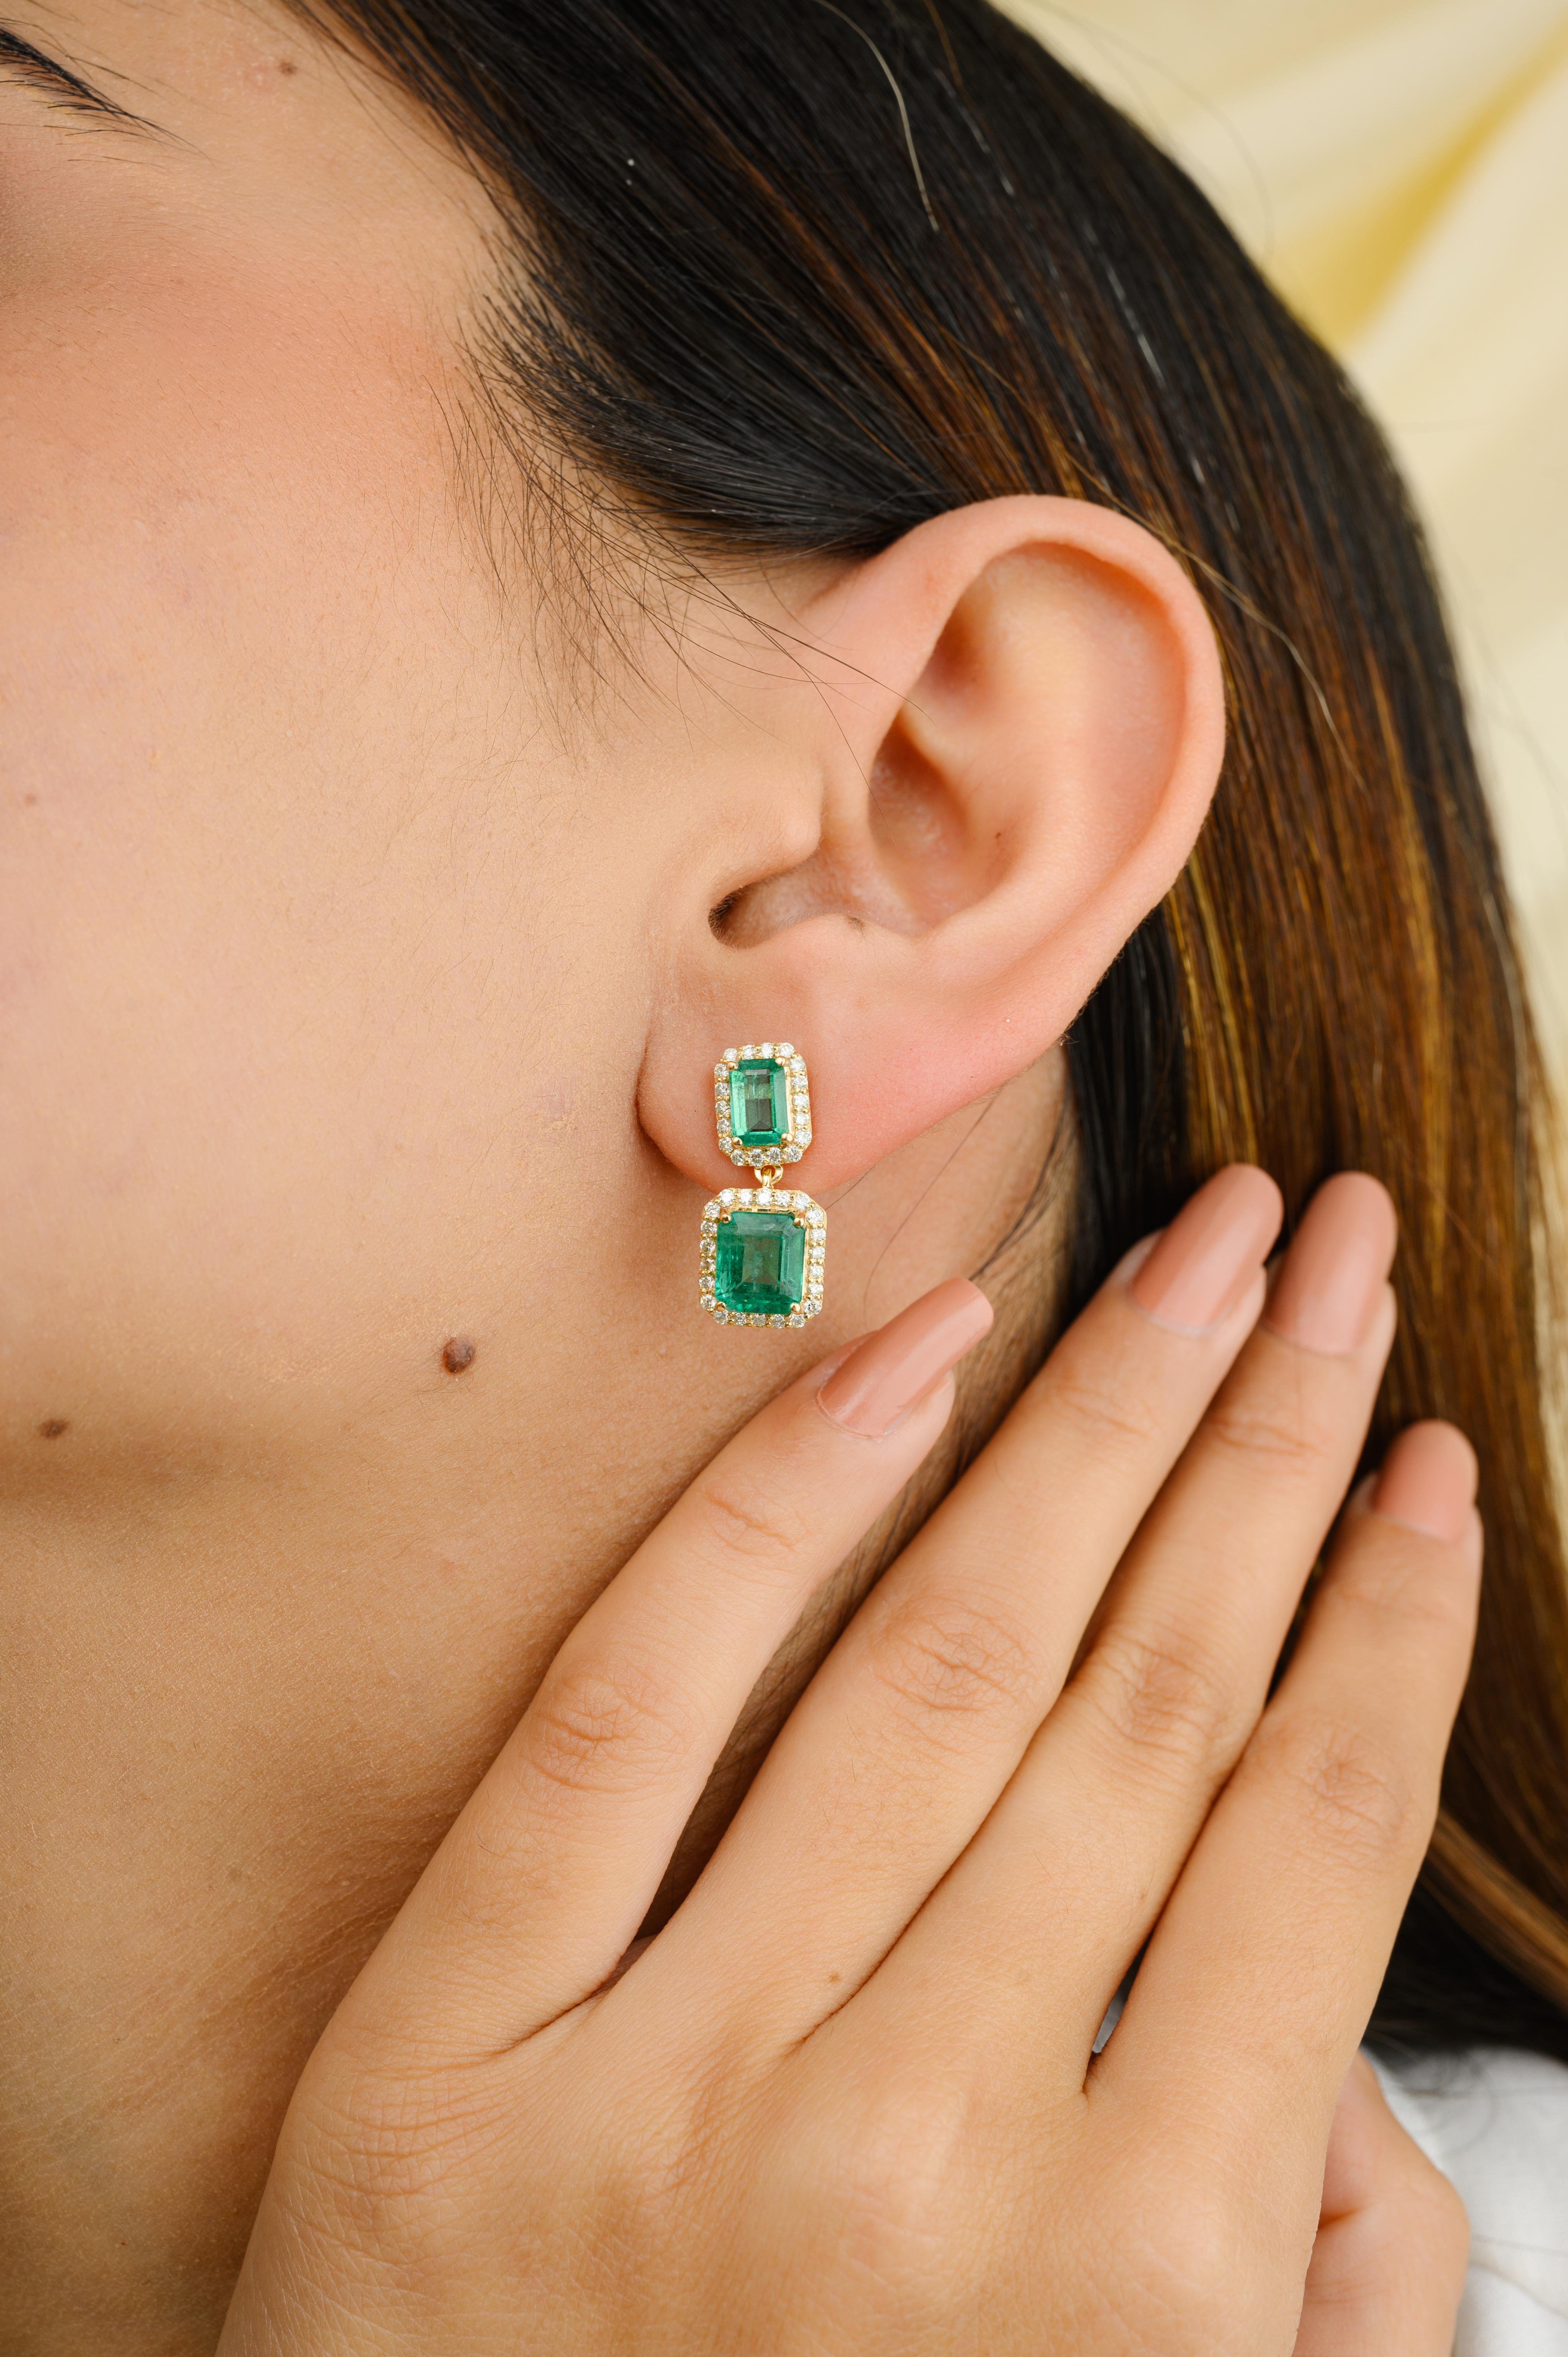 Regal Emerald and Diamond Engagement Dangle Earrings in 18K Gold, um mit Ihrem Look ein Statement zu setzen. Sie brauchen baumelnde Ohrringe, um mit Ihrem Look ein Statement zu setzen. Diese Ohrringe mit Smaragd im Achteckschliff und Diamanten im